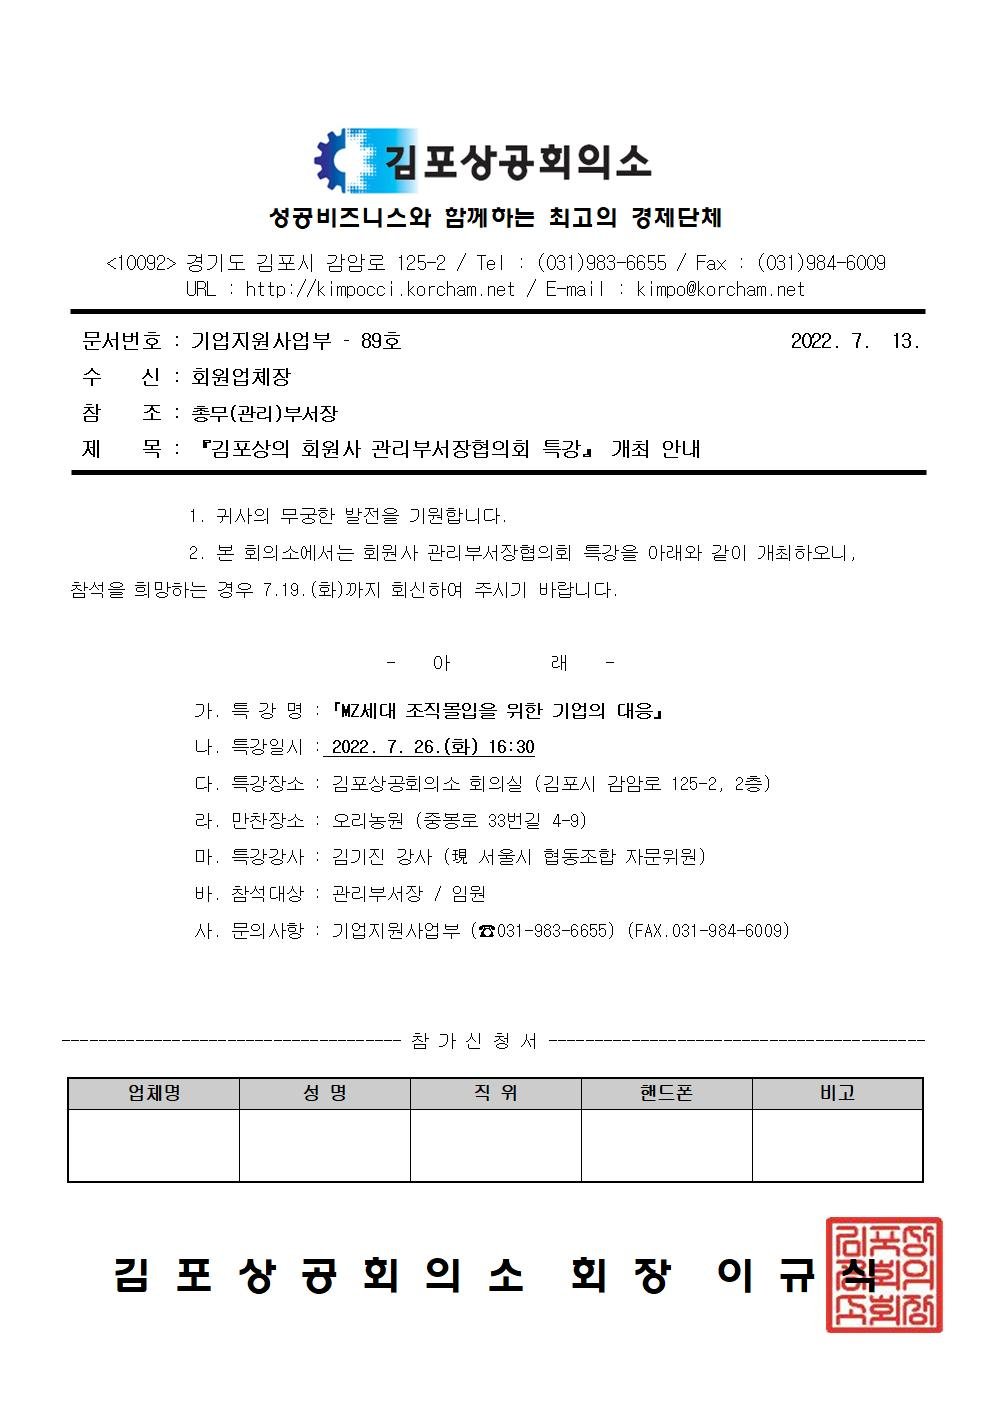 (공문22-89)『김포상의 회원사 관리부서장협의회 특강』 개최 안내.jpg